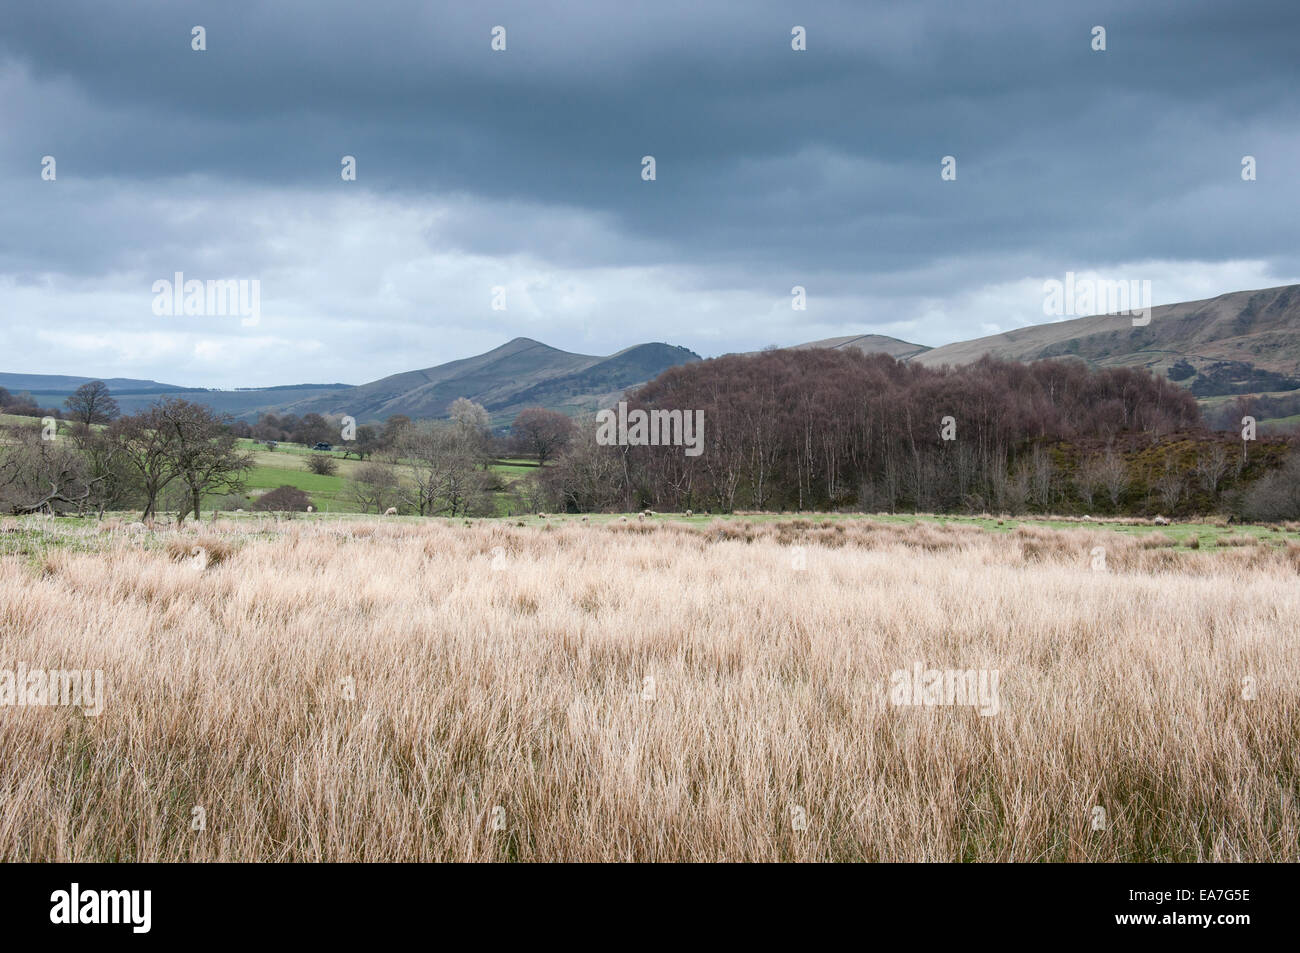 Ver perder a colina, cerca del distrito de Peak Edale, Derbyshire. Mirando por encima del campo de finales del invierno los pastos y juncos. Foto de stock